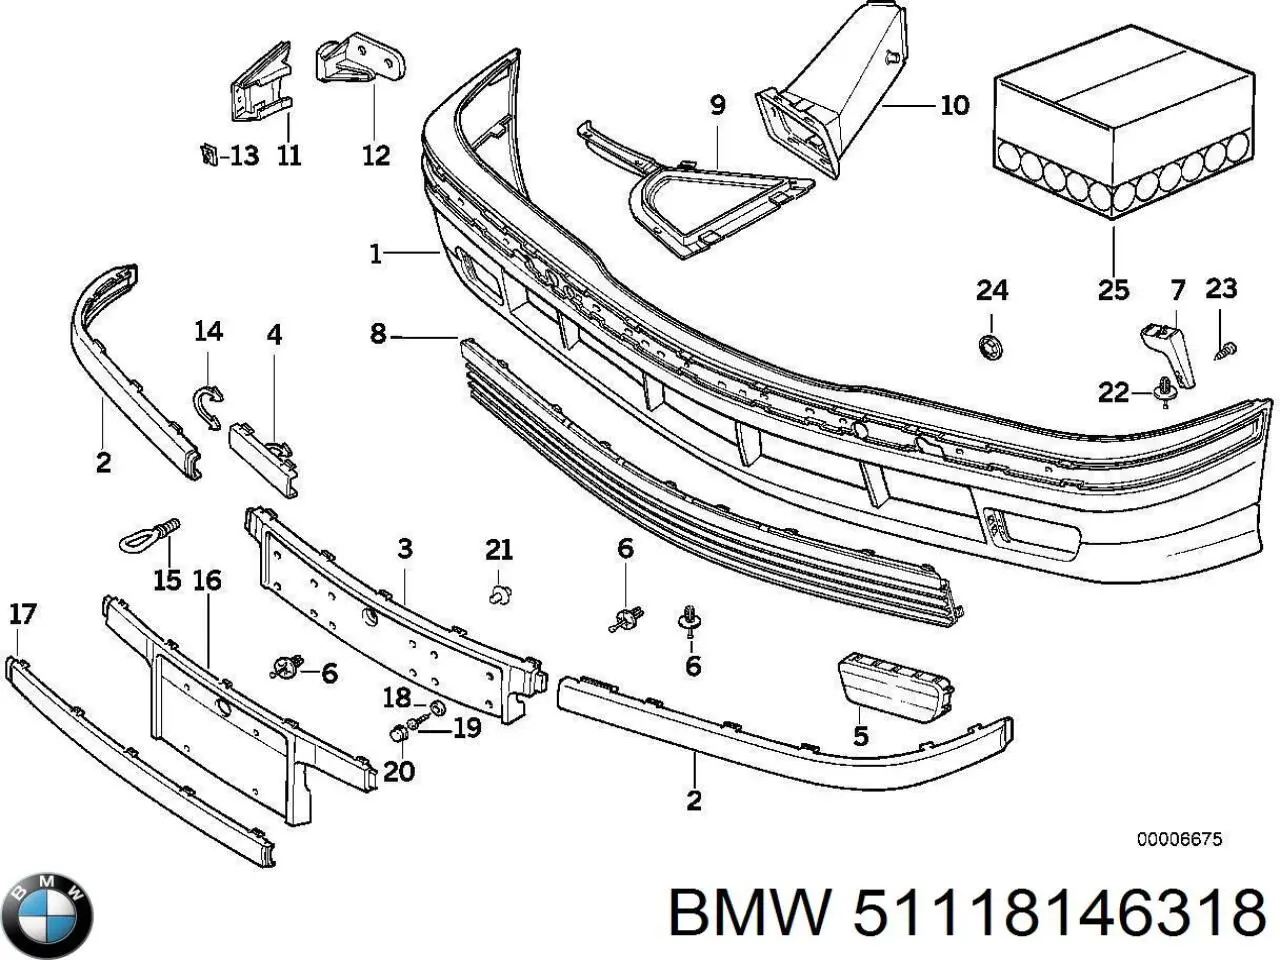 Listón embellecedor/protector, paragolpes delantero derecho para BMW 3 (E36)